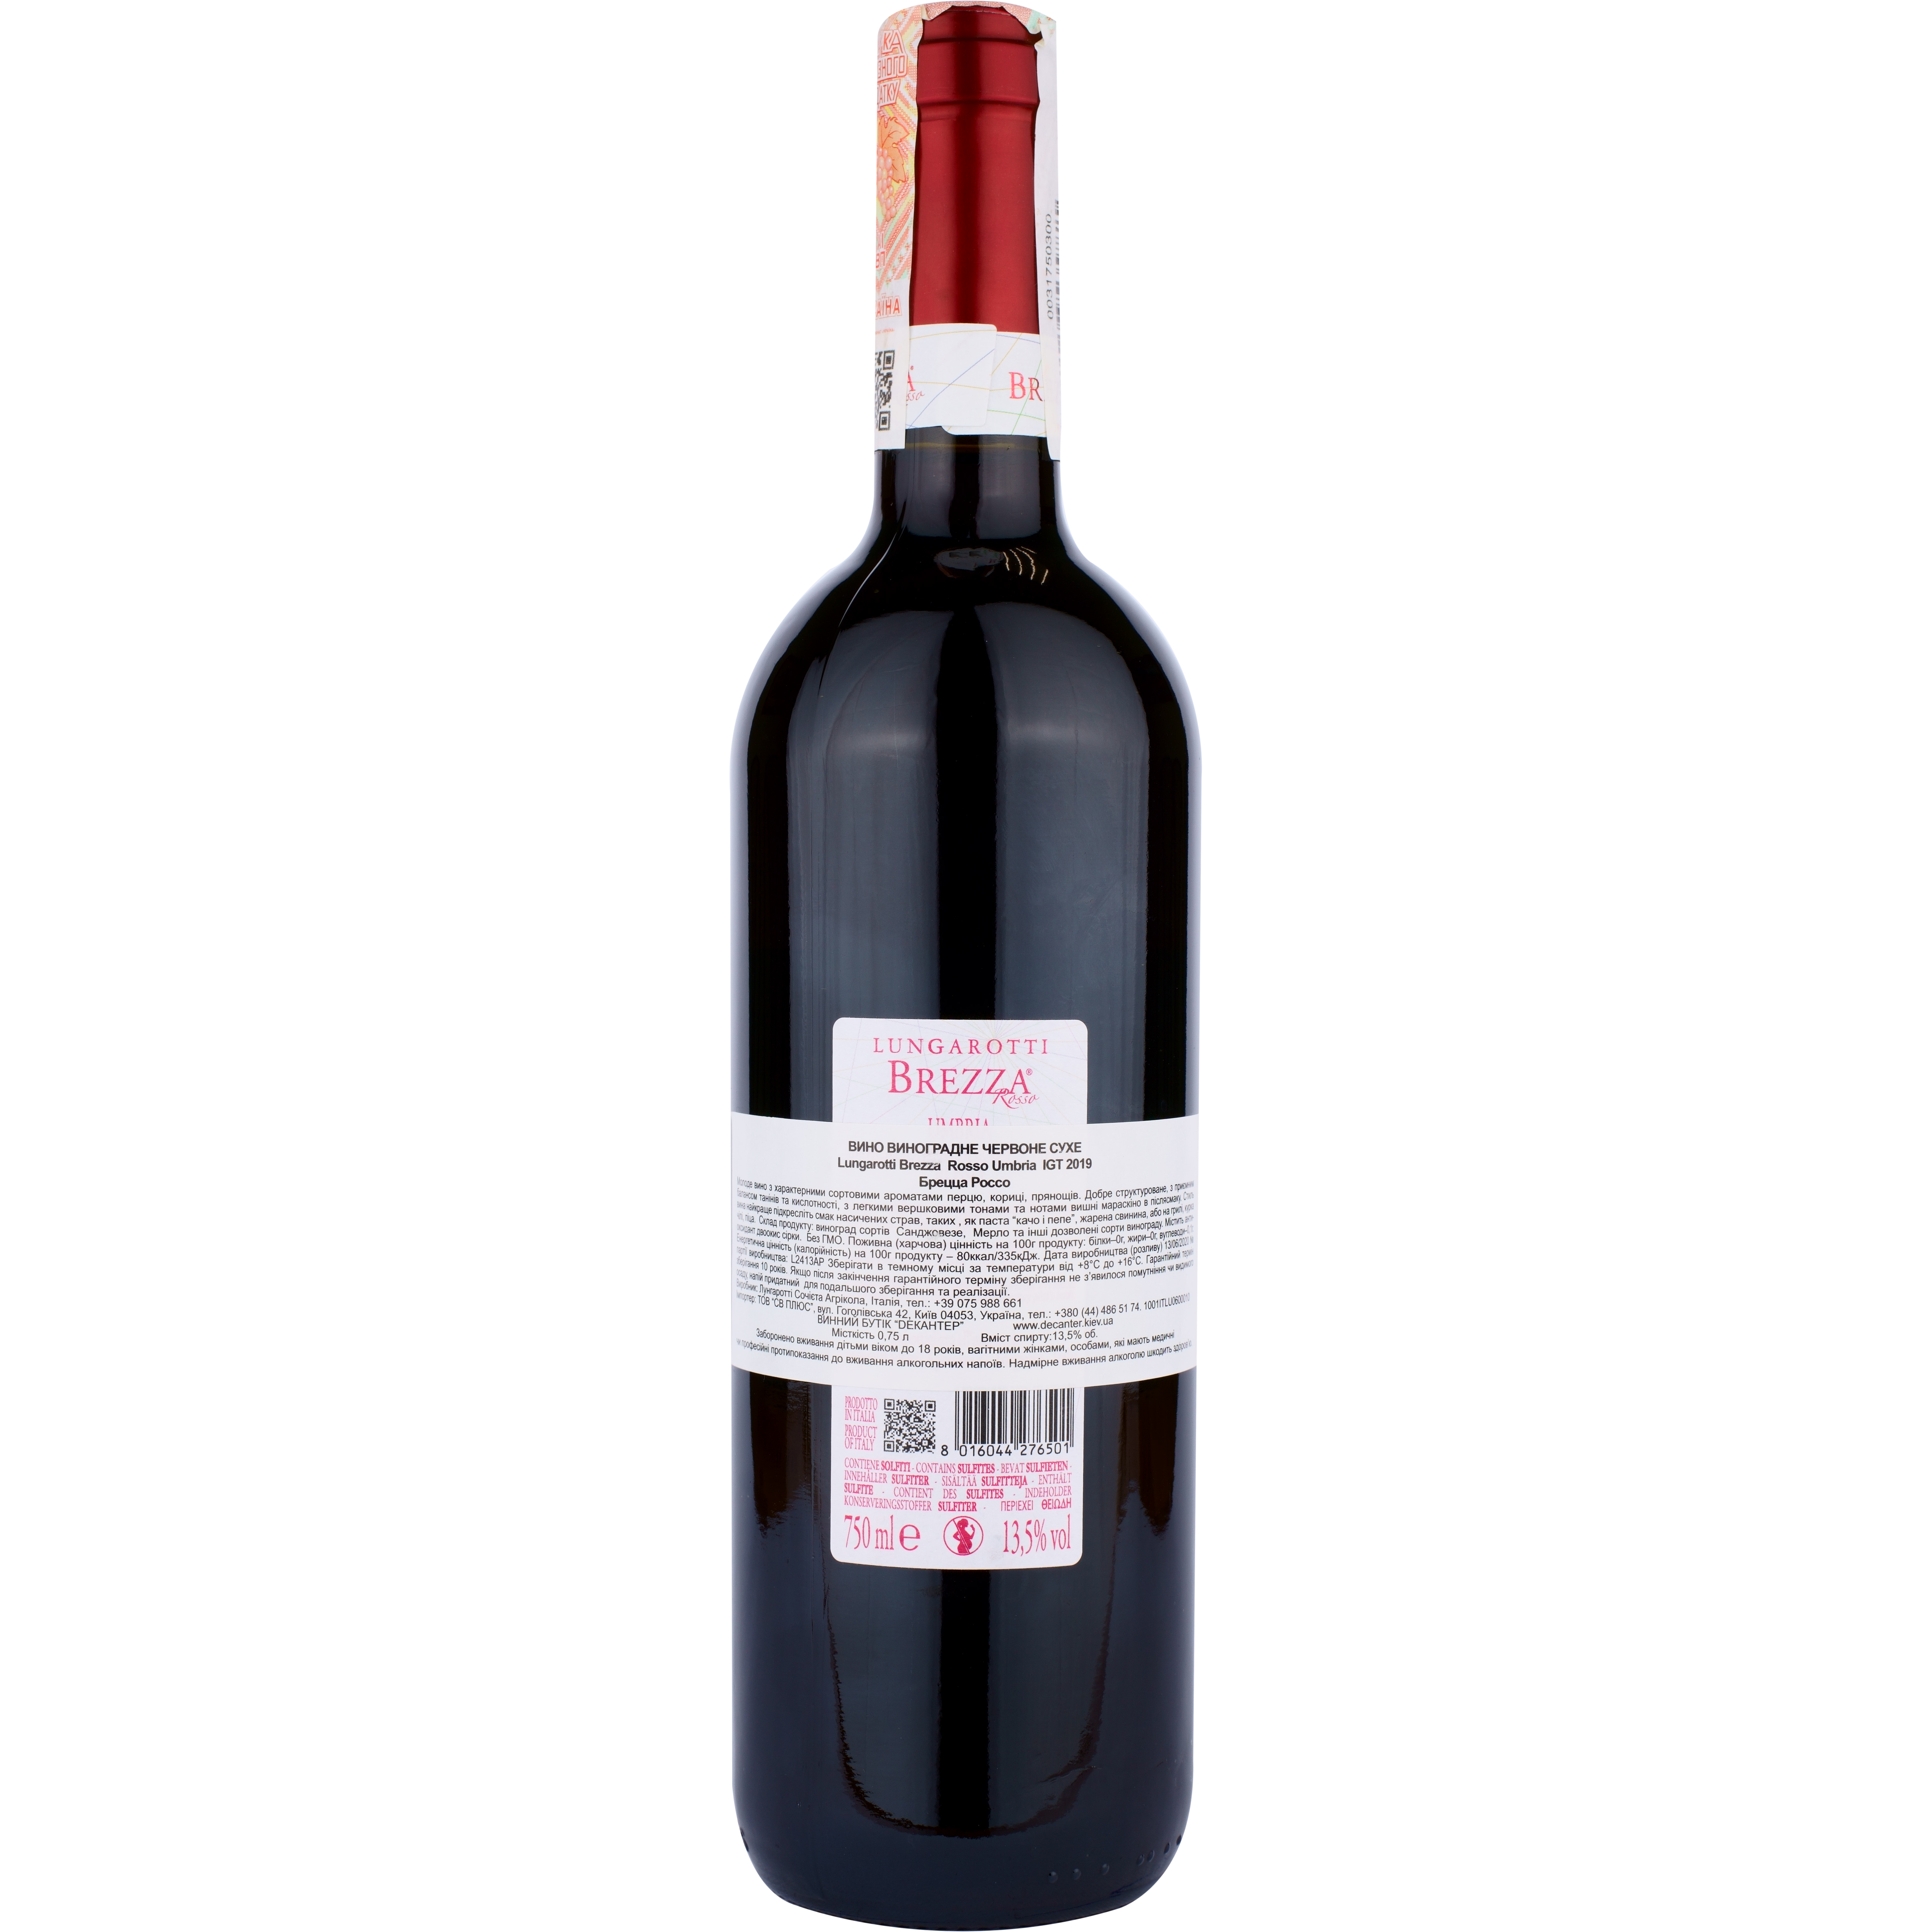 Вино Lungarotti Brezza Rosso IGT, червоне, сухе, 12%, 0,75 л - фото 2